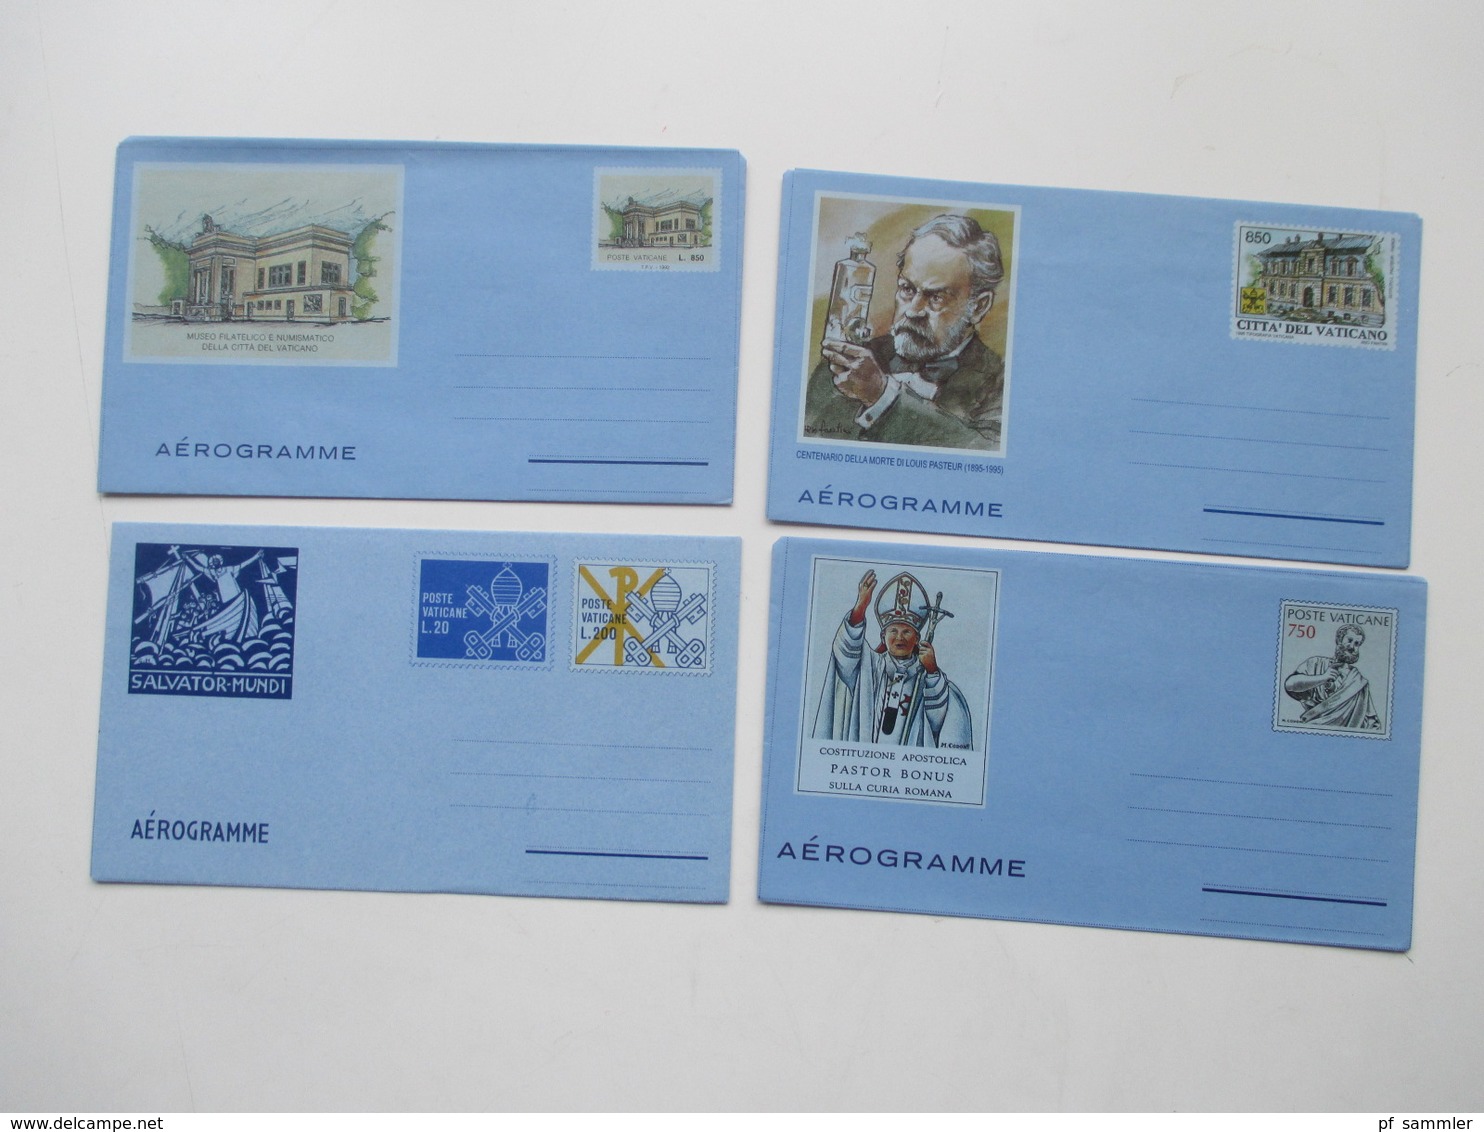 Vatican 1950 - 1982 kleiner Belegeposten mit Aerogramme / Ansichtskarten / Maximumkarten usw. insgesamt 72 Stk.